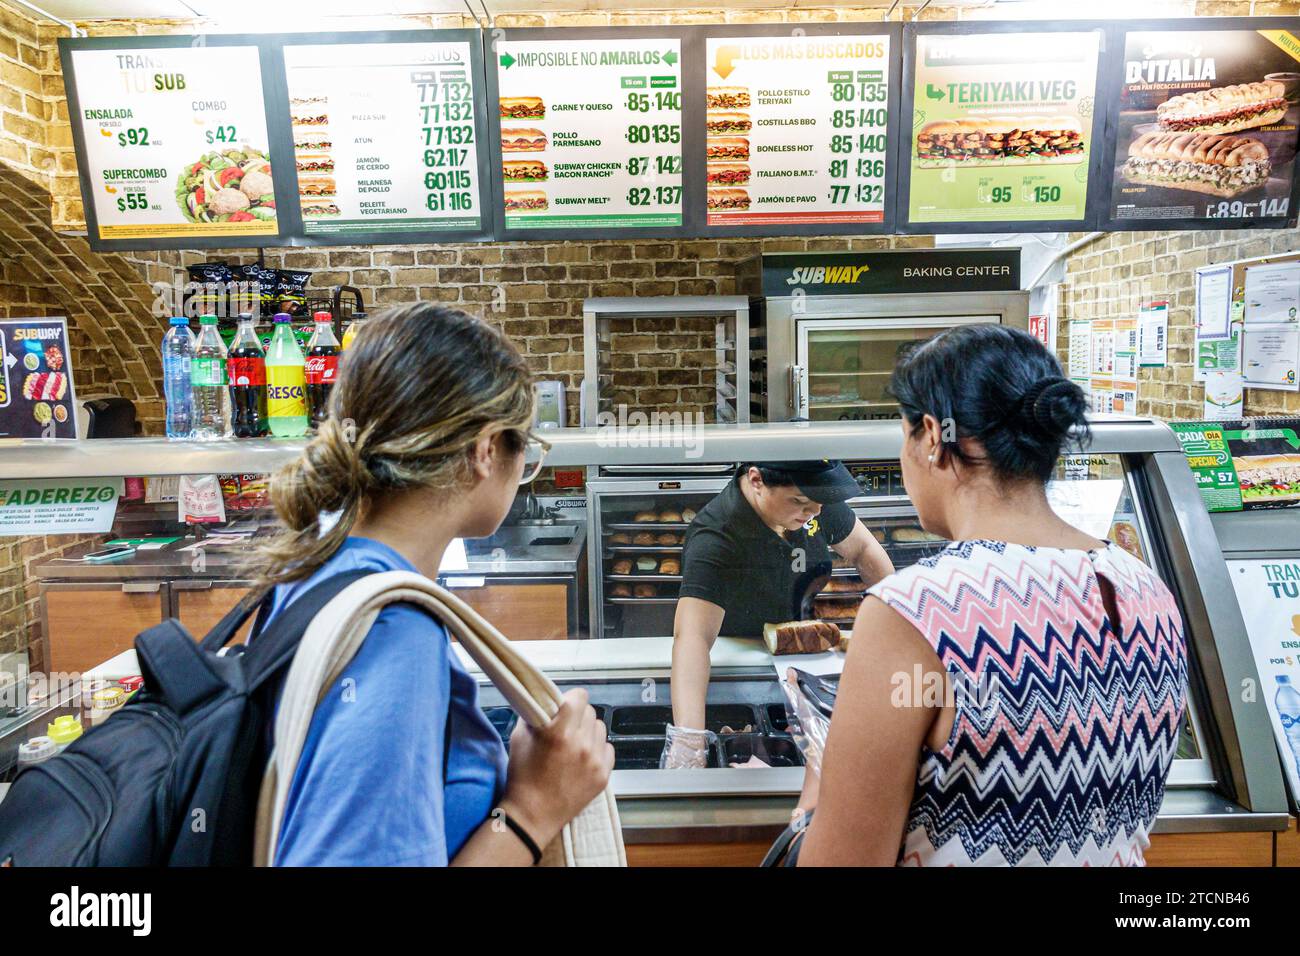 Merida Mexique, centro historico quartier historique central, Subway sandwichs commande, femme femme femme femme femme femme, adulte, amis résidents, à l'intérieur interio Banque D'Images